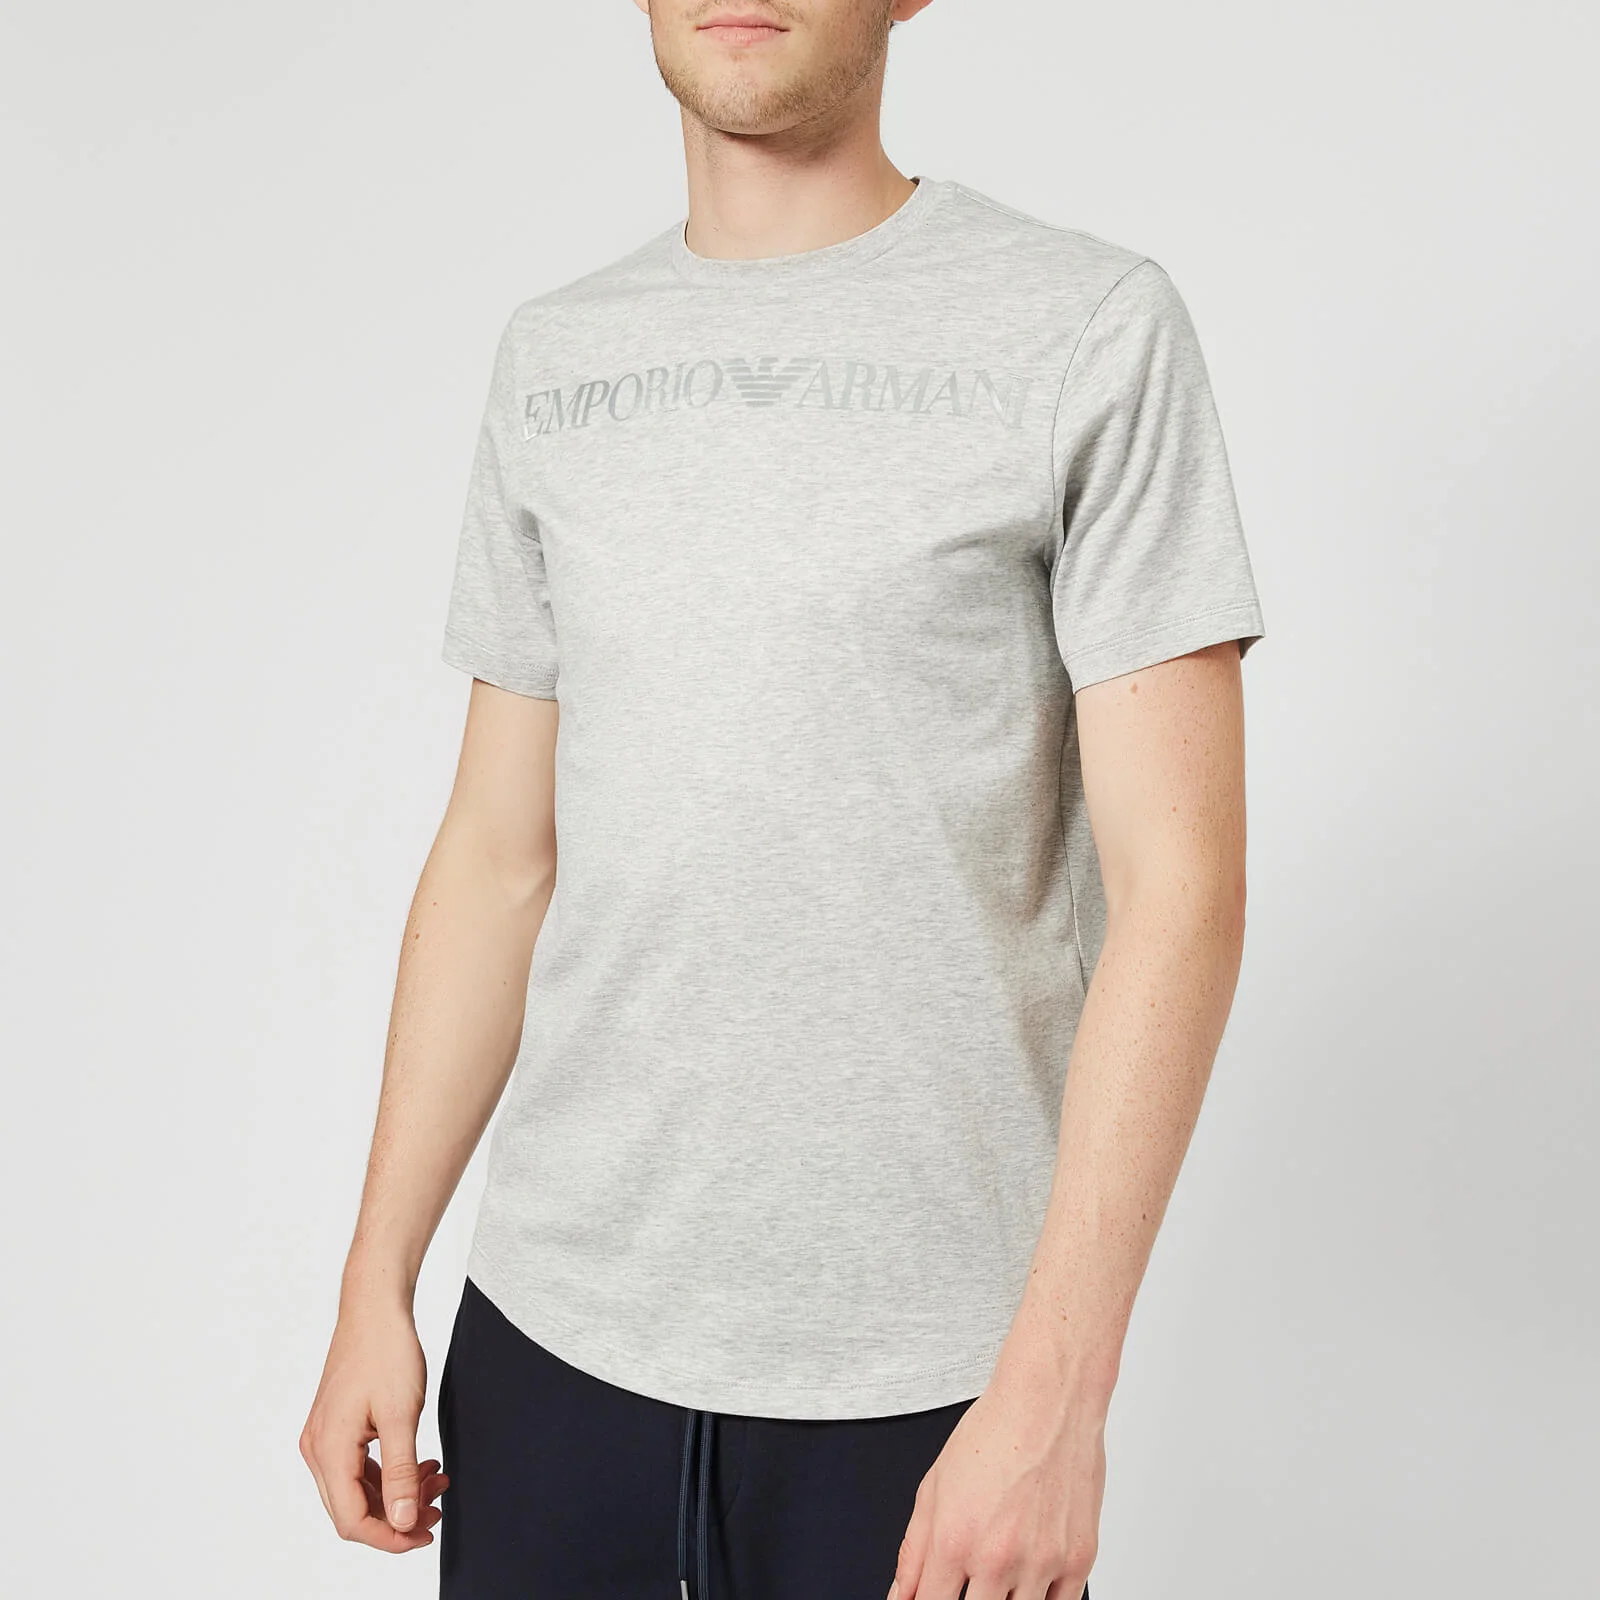 Emporio Armani Men's Eagle Collar Logo T-Shirt - Grey Image 1